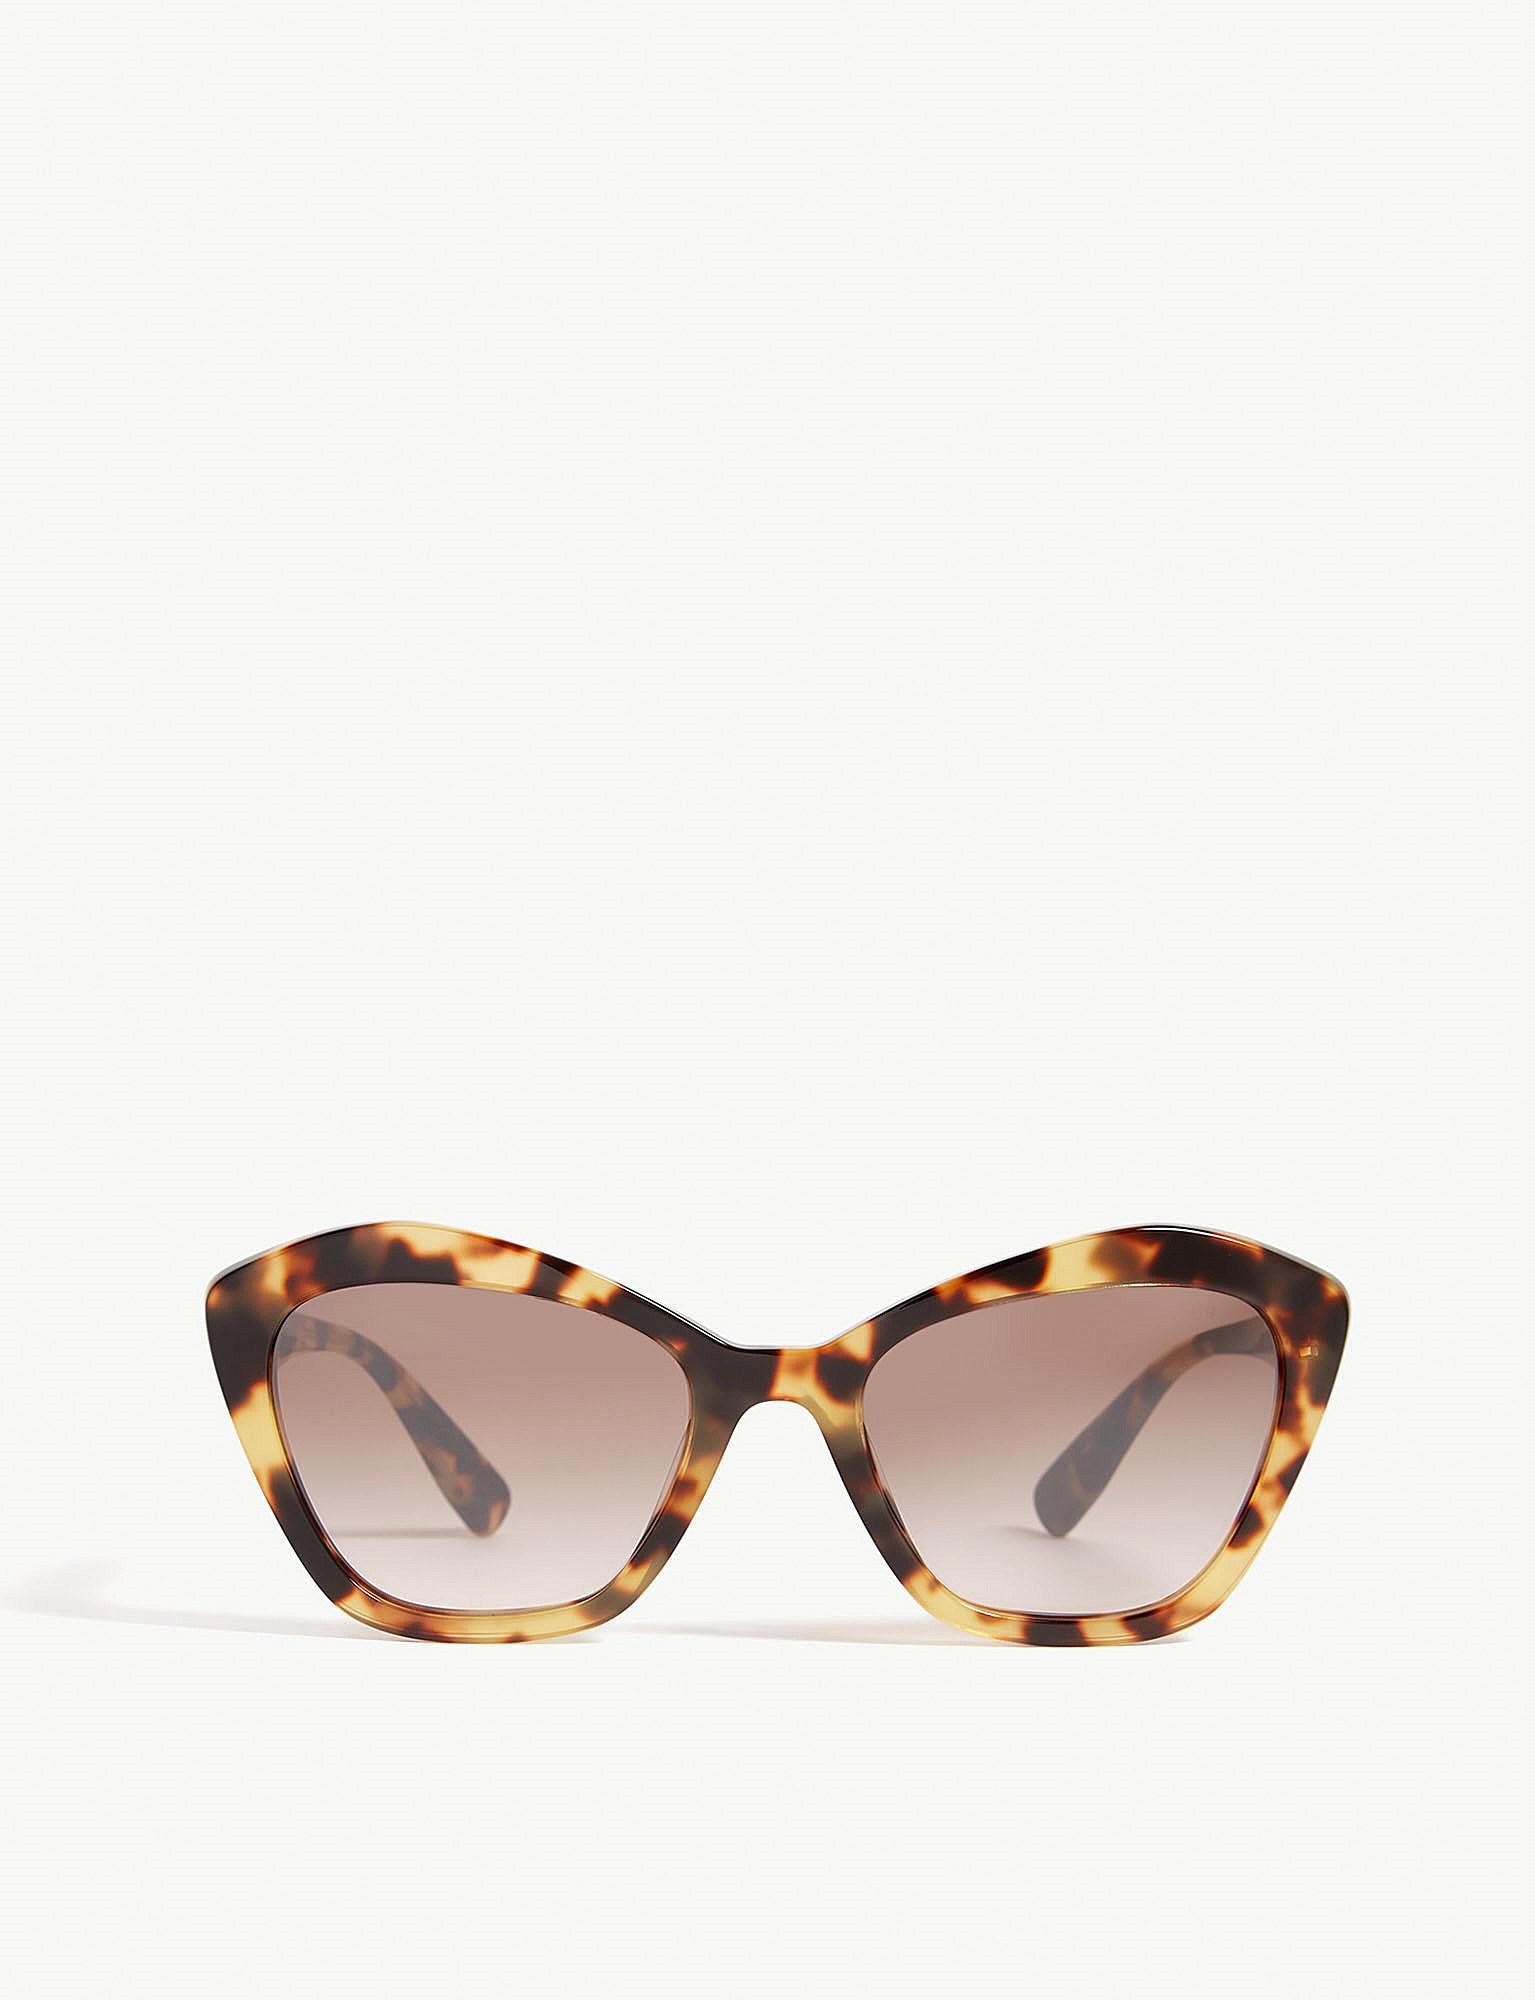 Lyst - Miu Miu Mu05u Cat-eye-frame Sunglasses in Brown